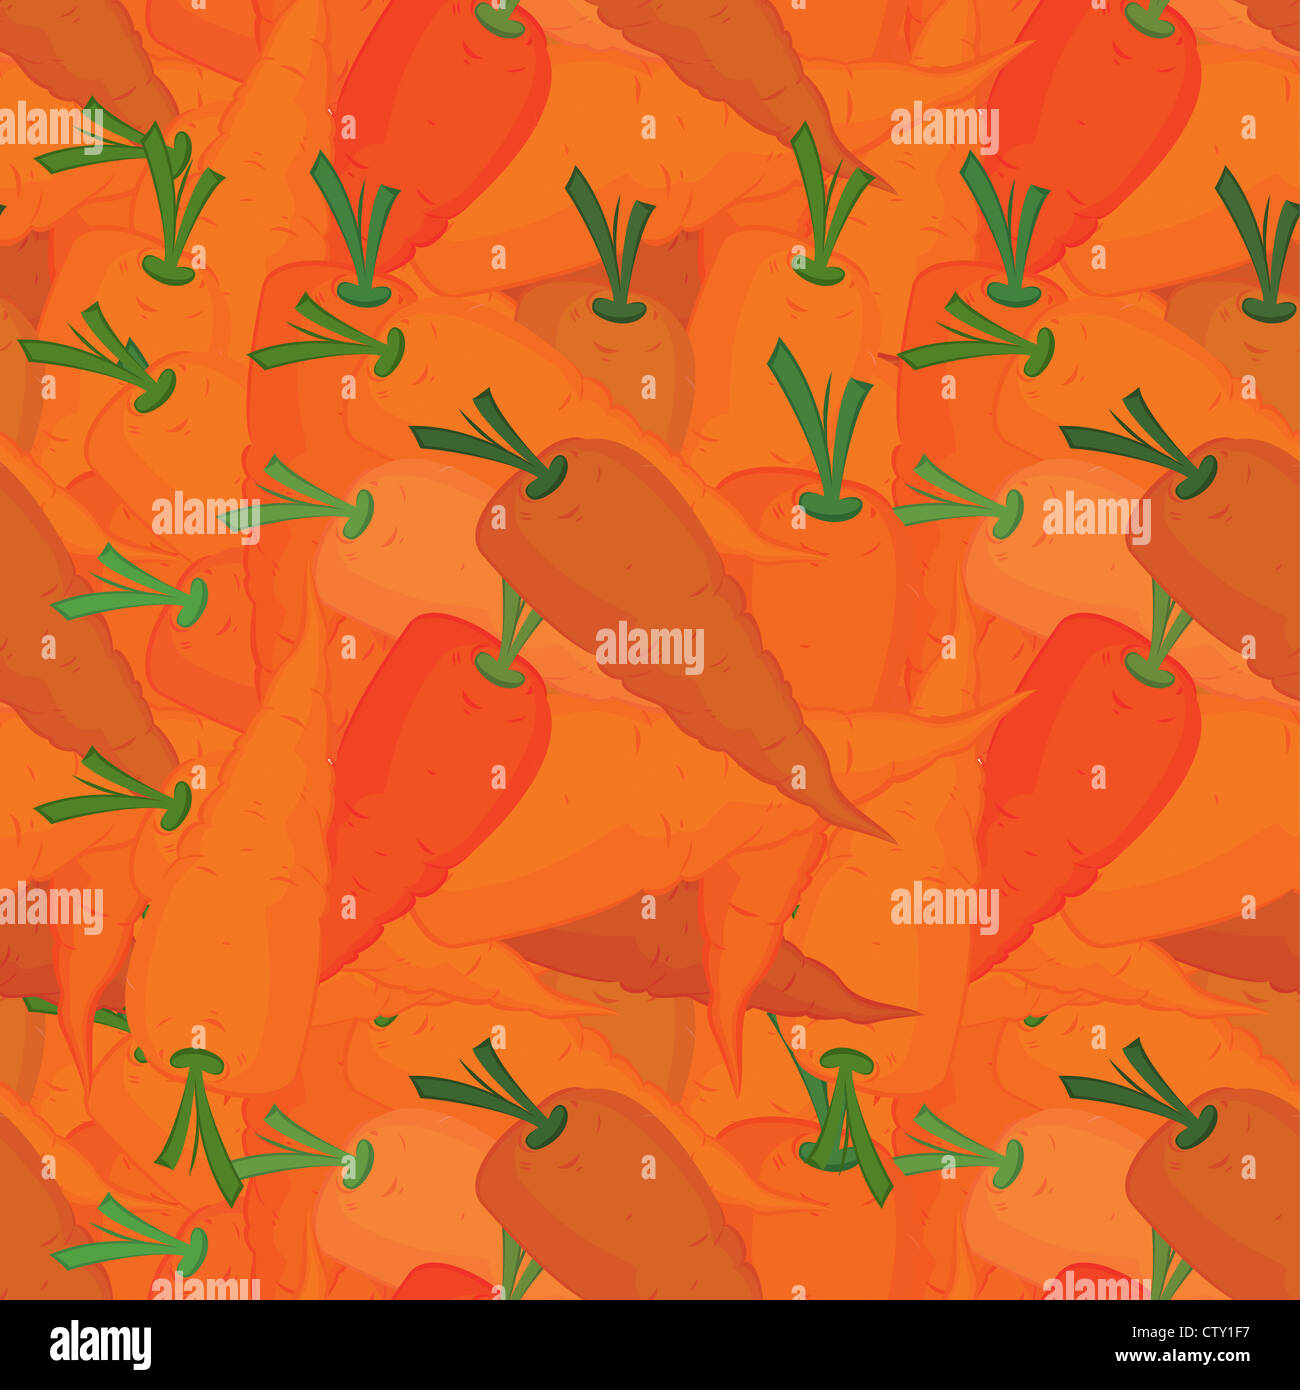 Orange carrots seamless pattern vector illustration  Stock Photo